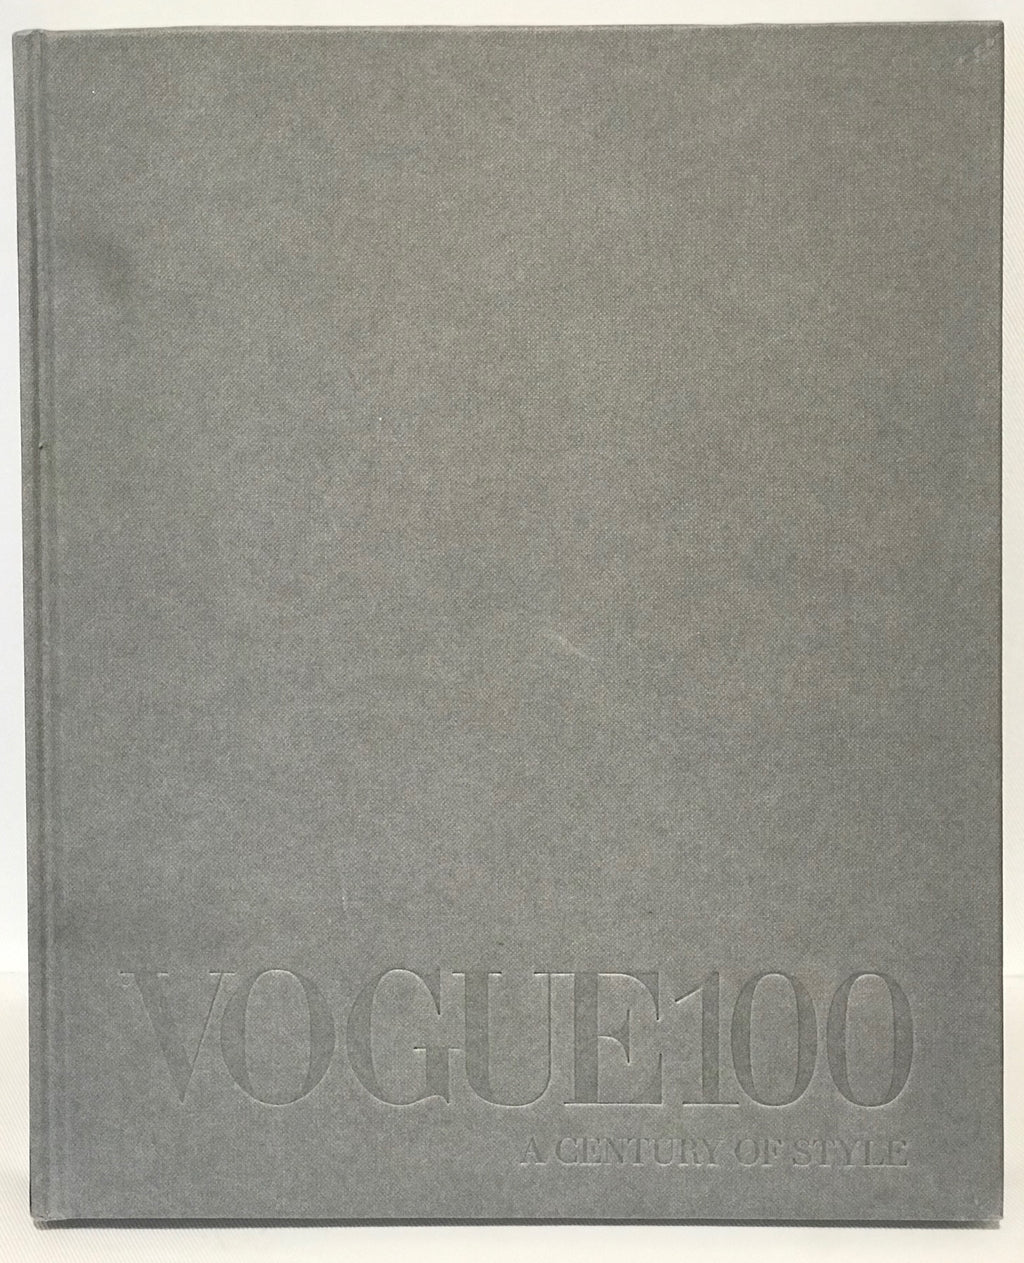 Book - Vogue 100